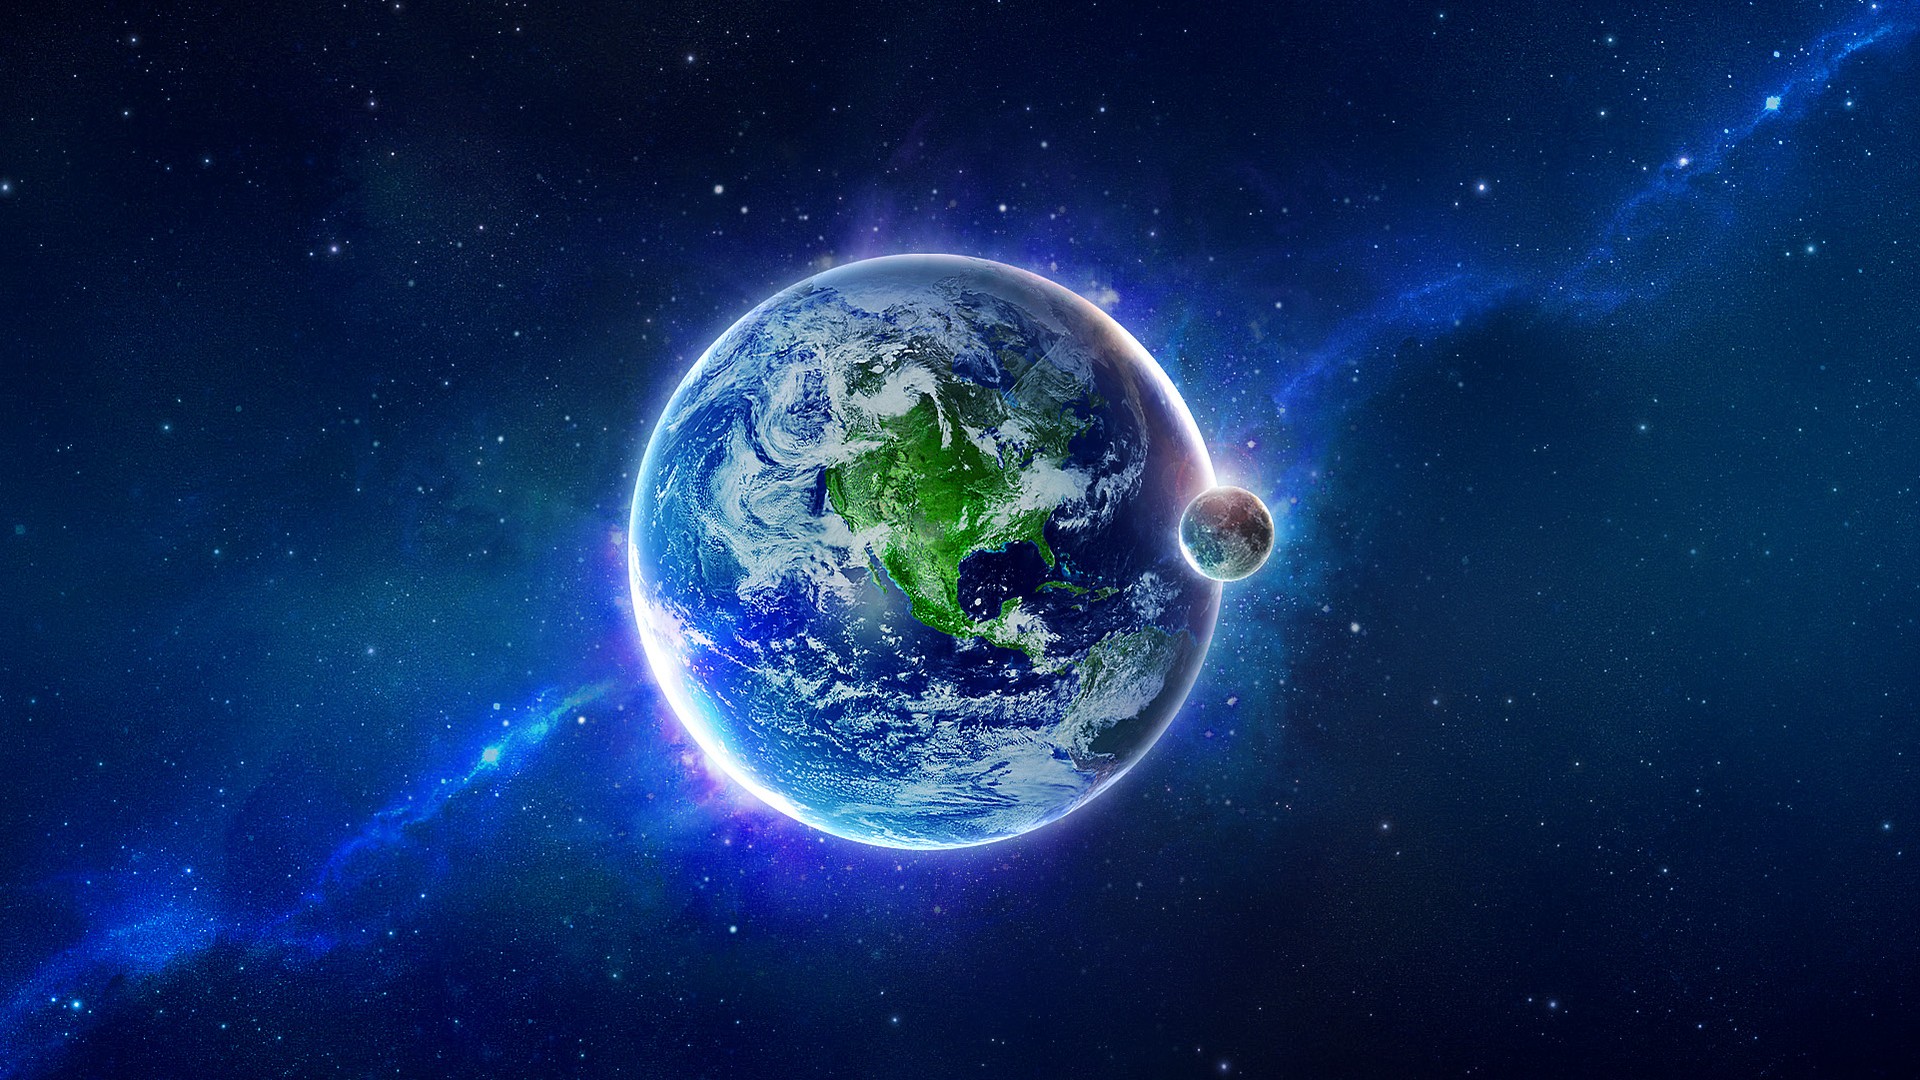 Обои планета земля planet earth картинки на рабочий стол на тему Космос - скачать скачать